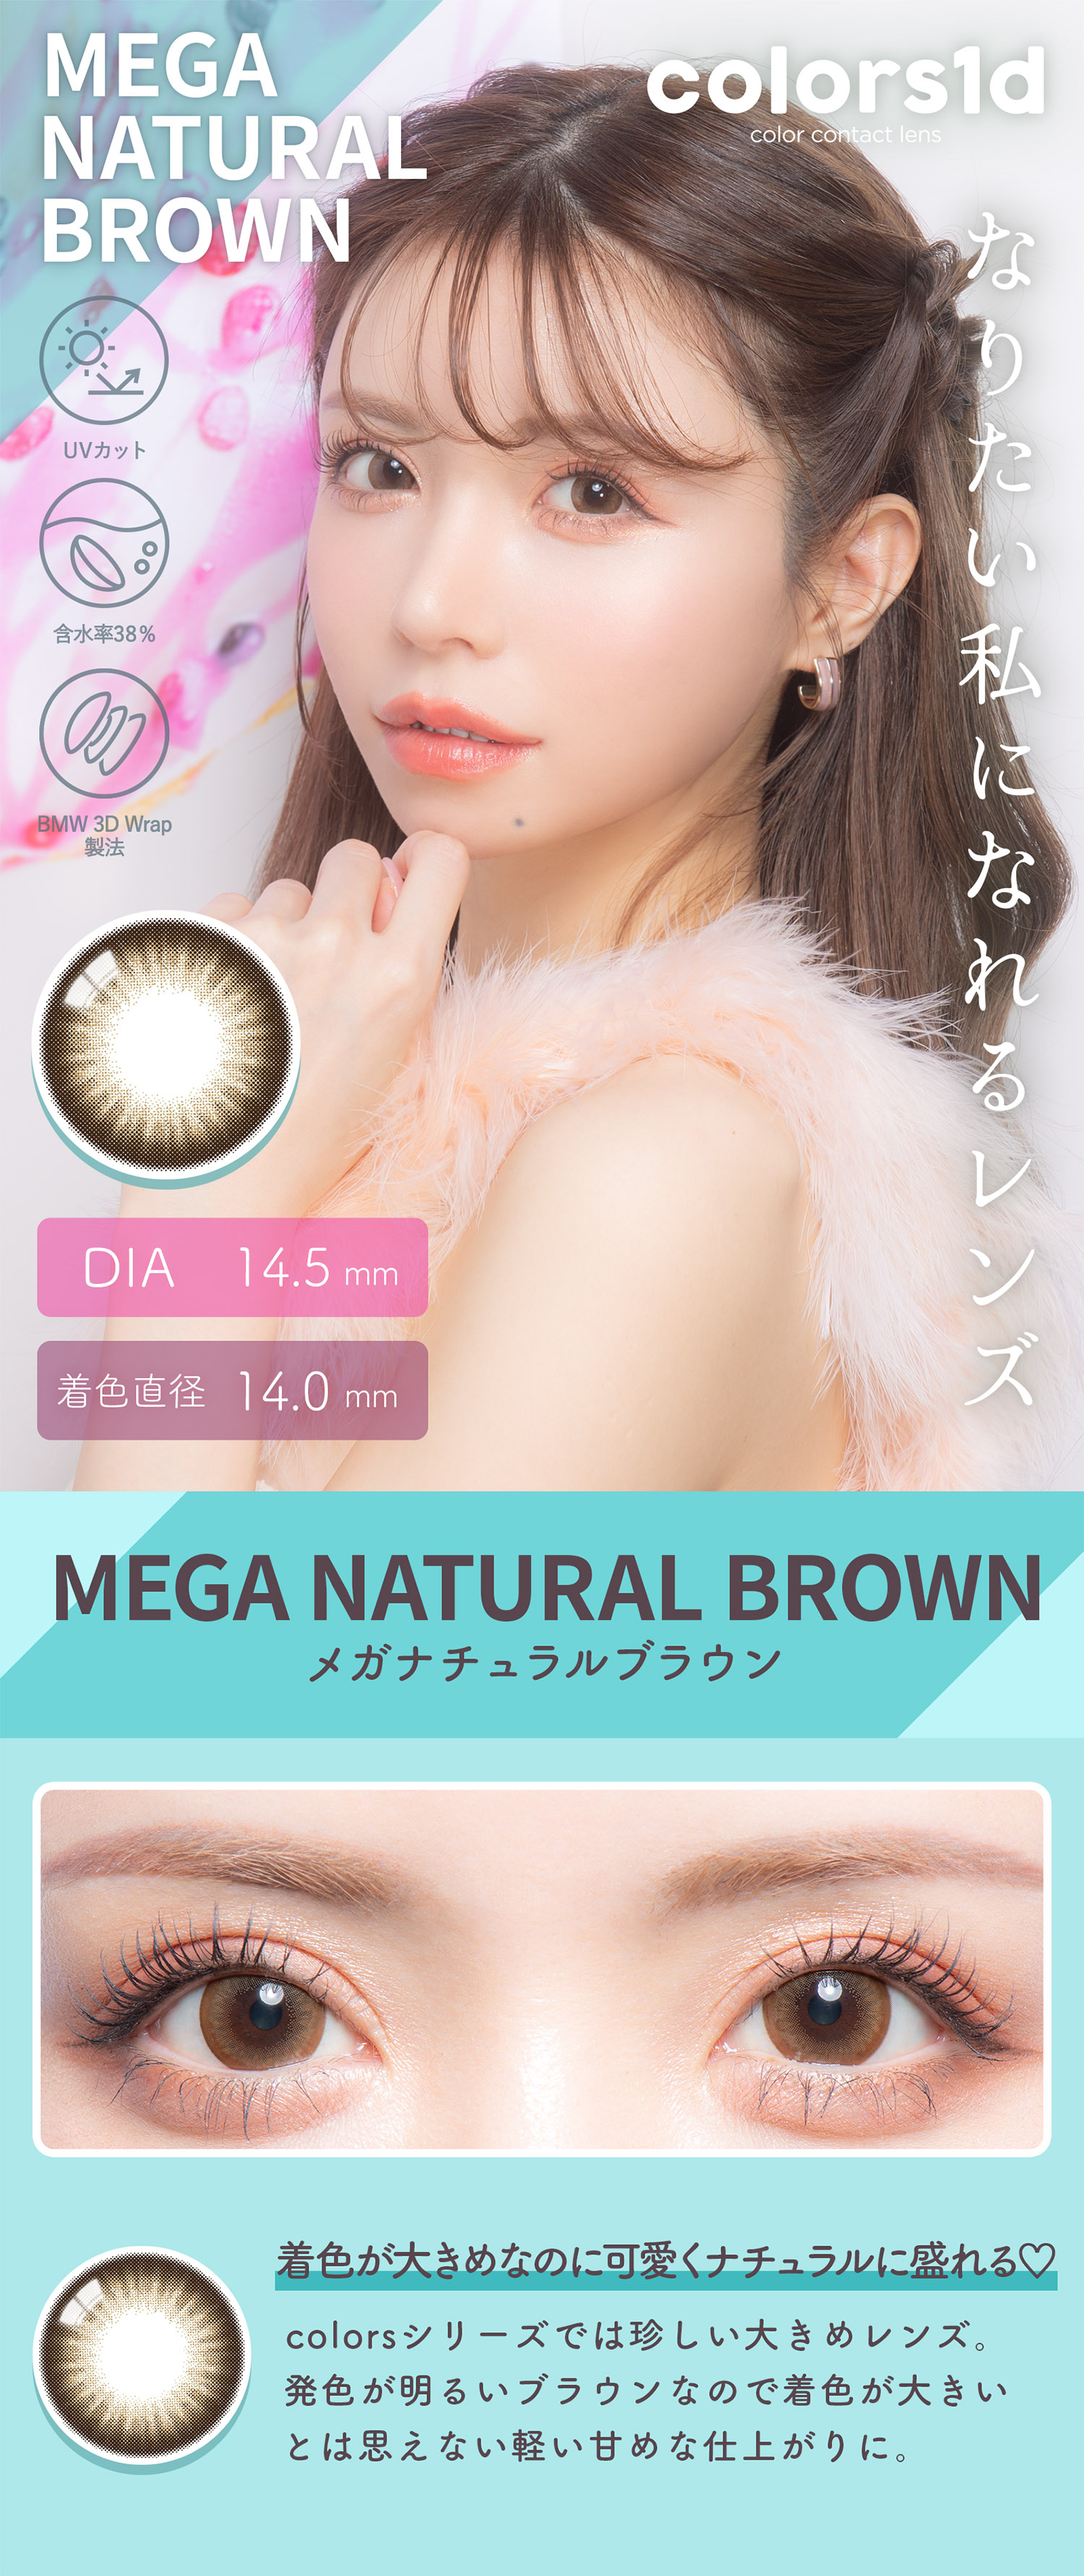 Colors(カラーズ)メガナチュラルブラウン-Mega Natural Brown【度あり/度なし• ワンデー • DIA14.5】